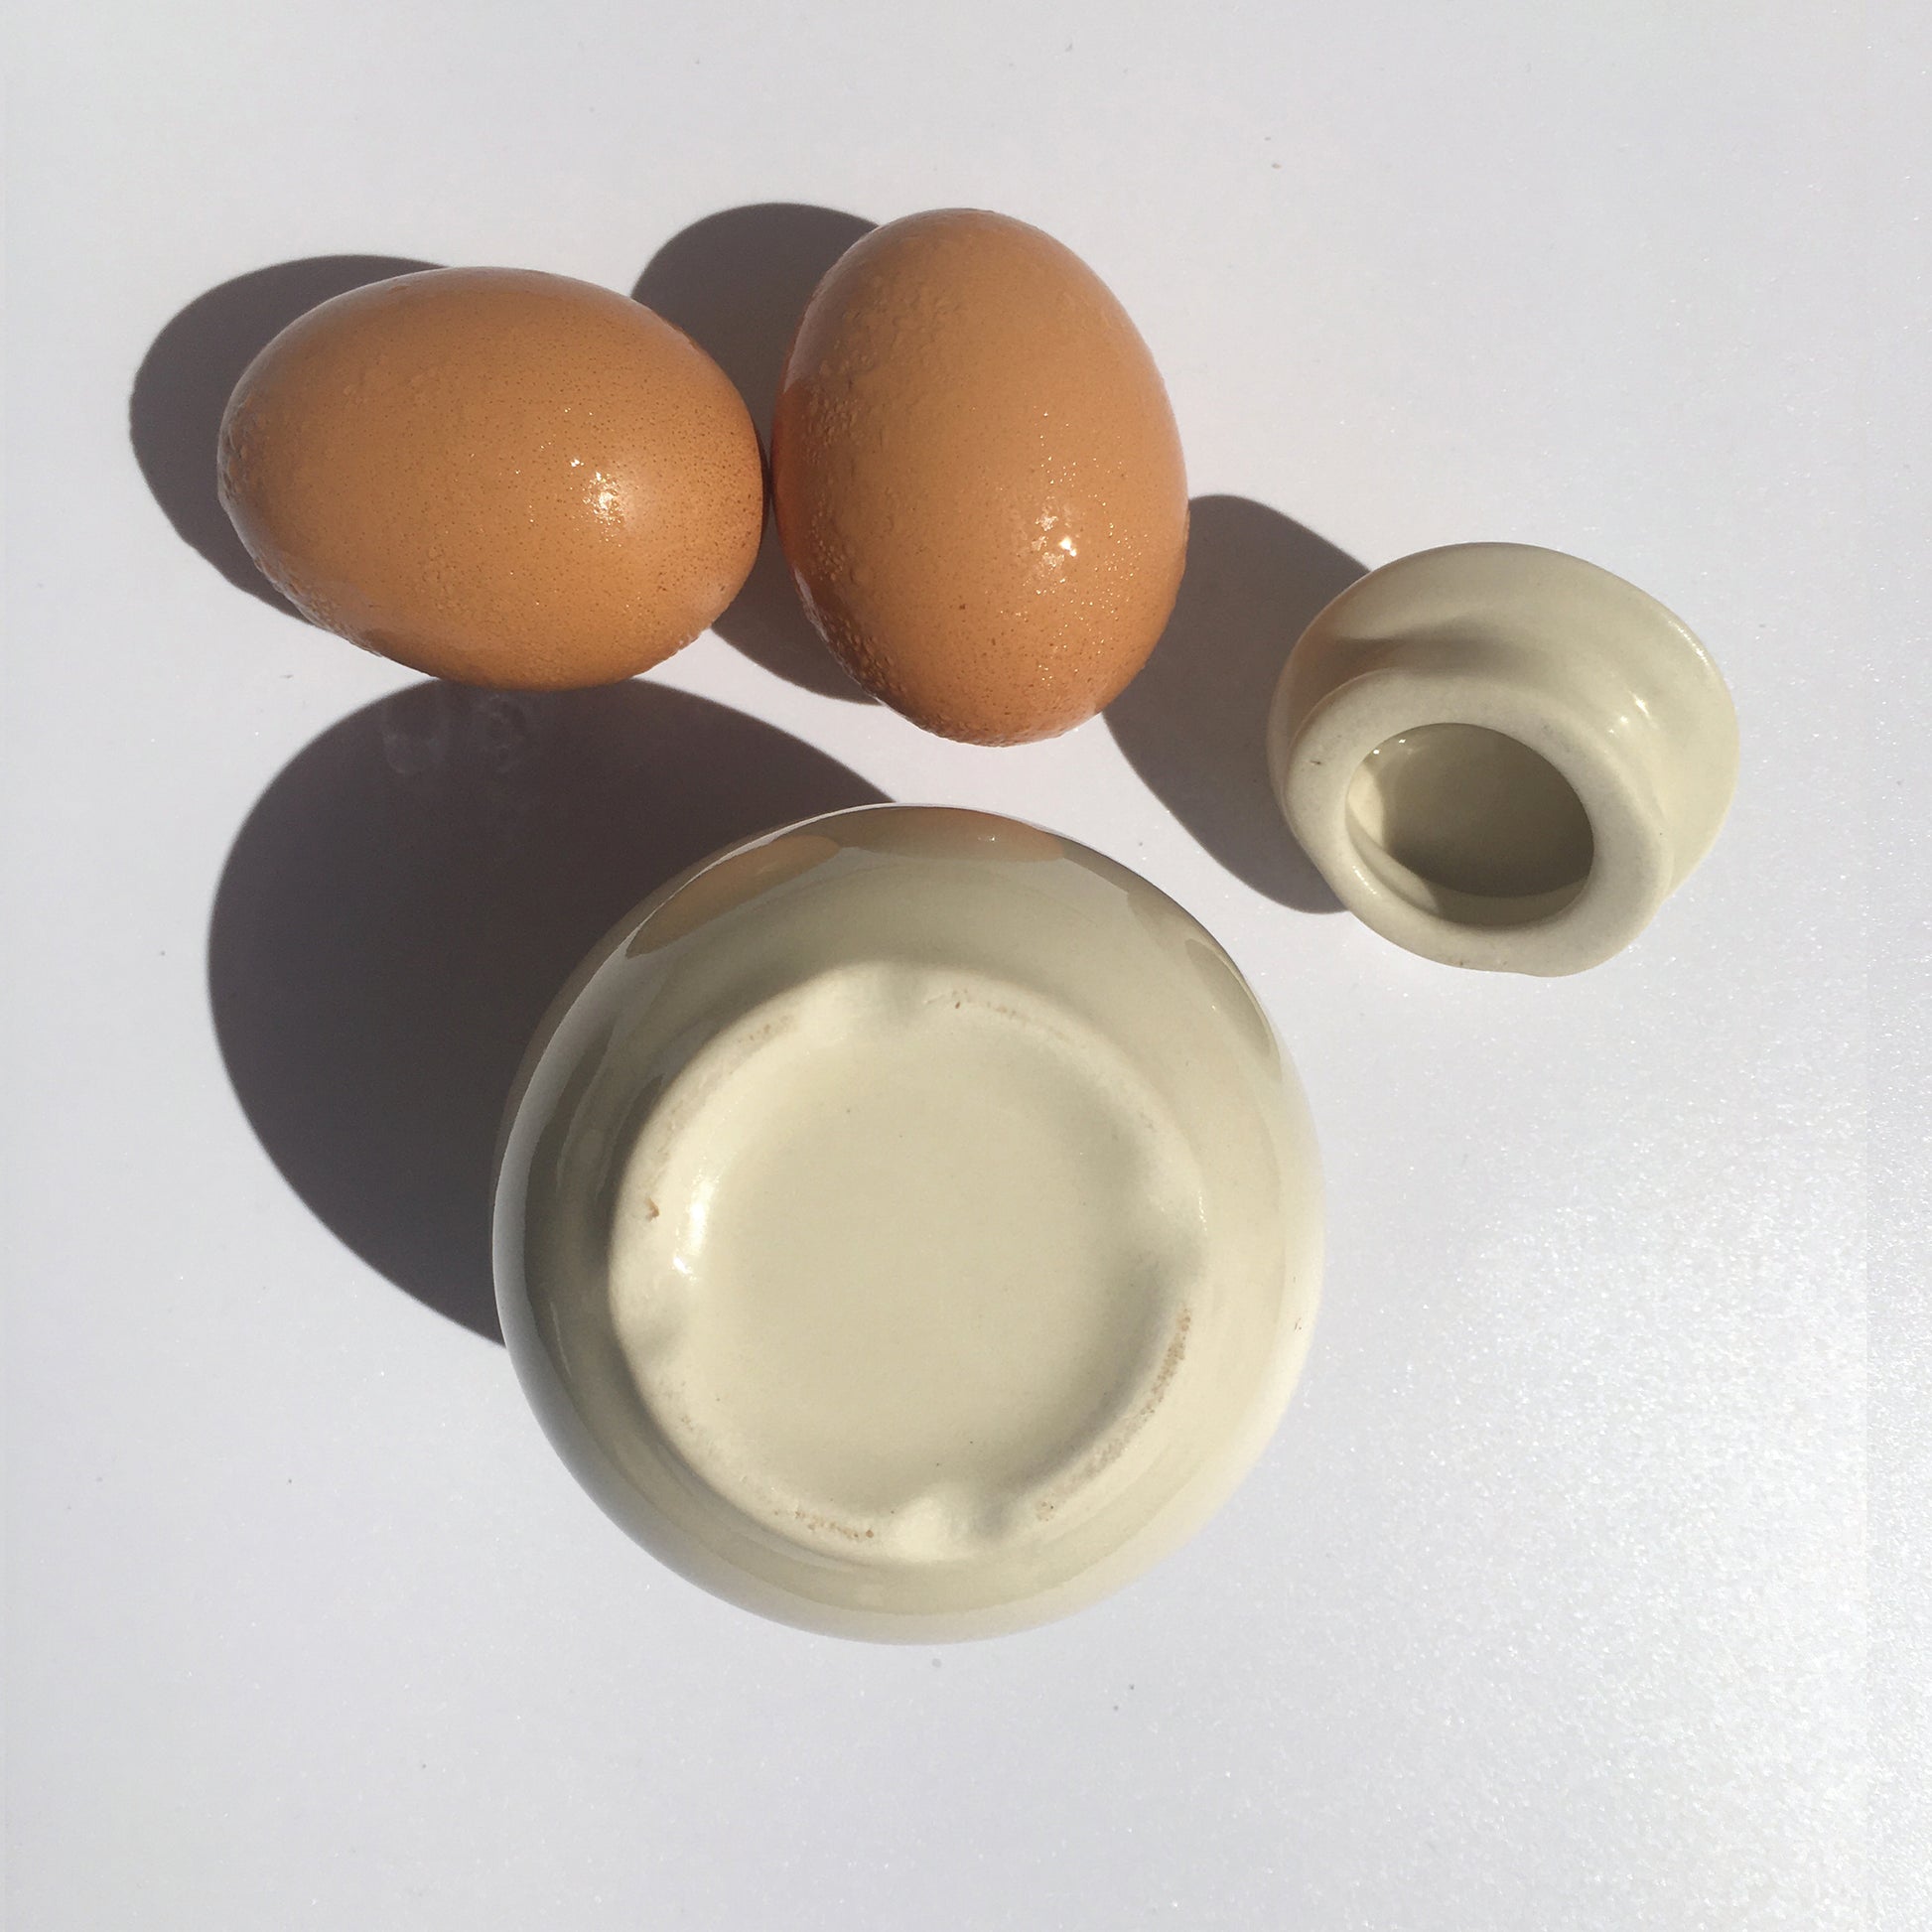  AggCoddler - Scandinavian Porcelain Egg Coddler with